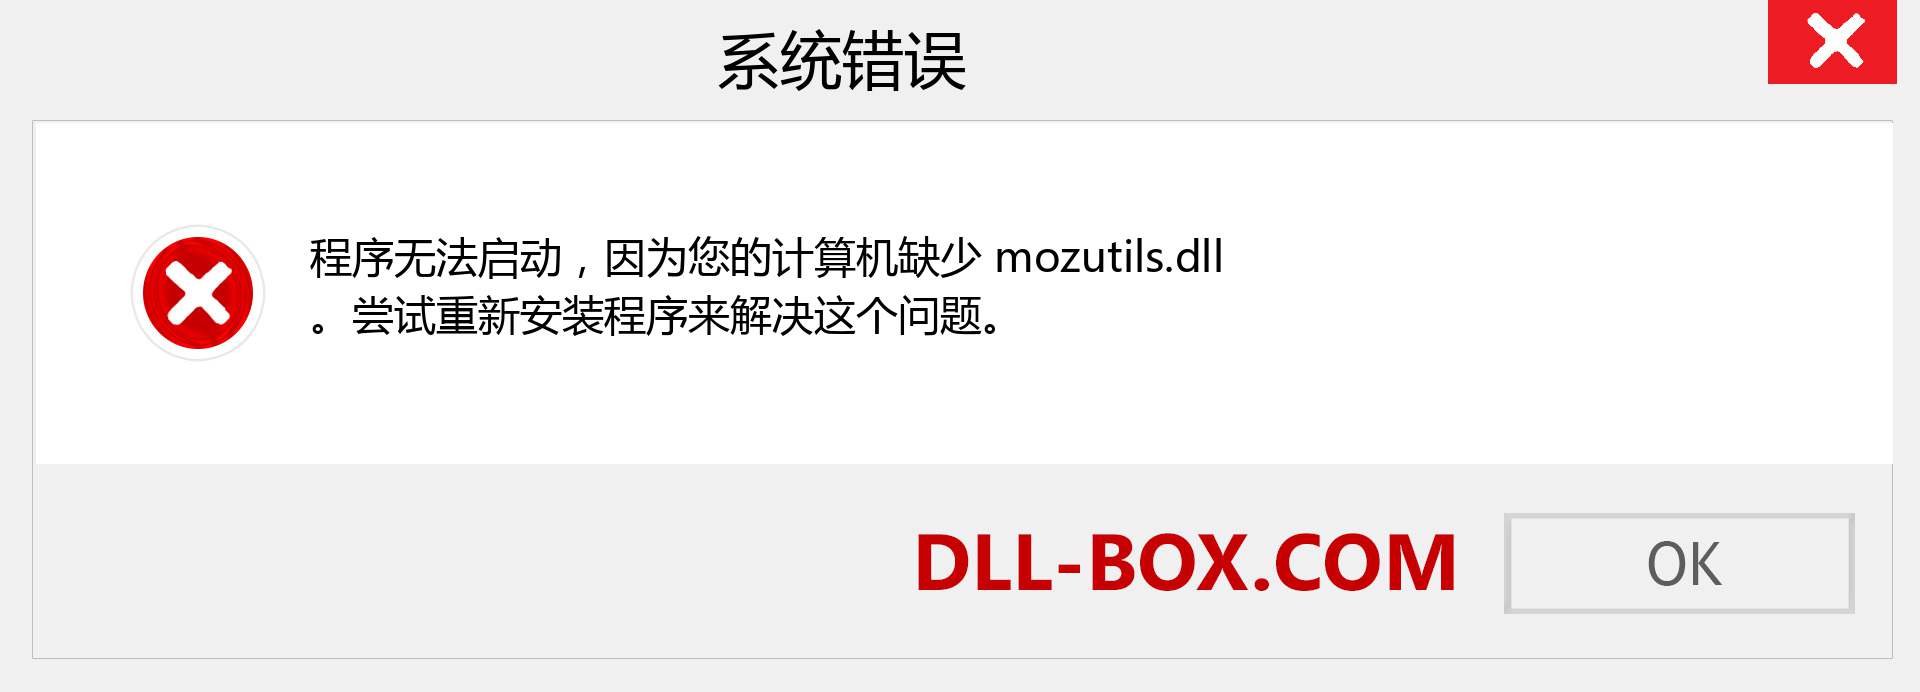 mozutils.dll 文件丢失？。 适用于 Windows 7、8、10 的下载 - 修复 Windows、照片、图像上的 mozutils dll 丢失错误